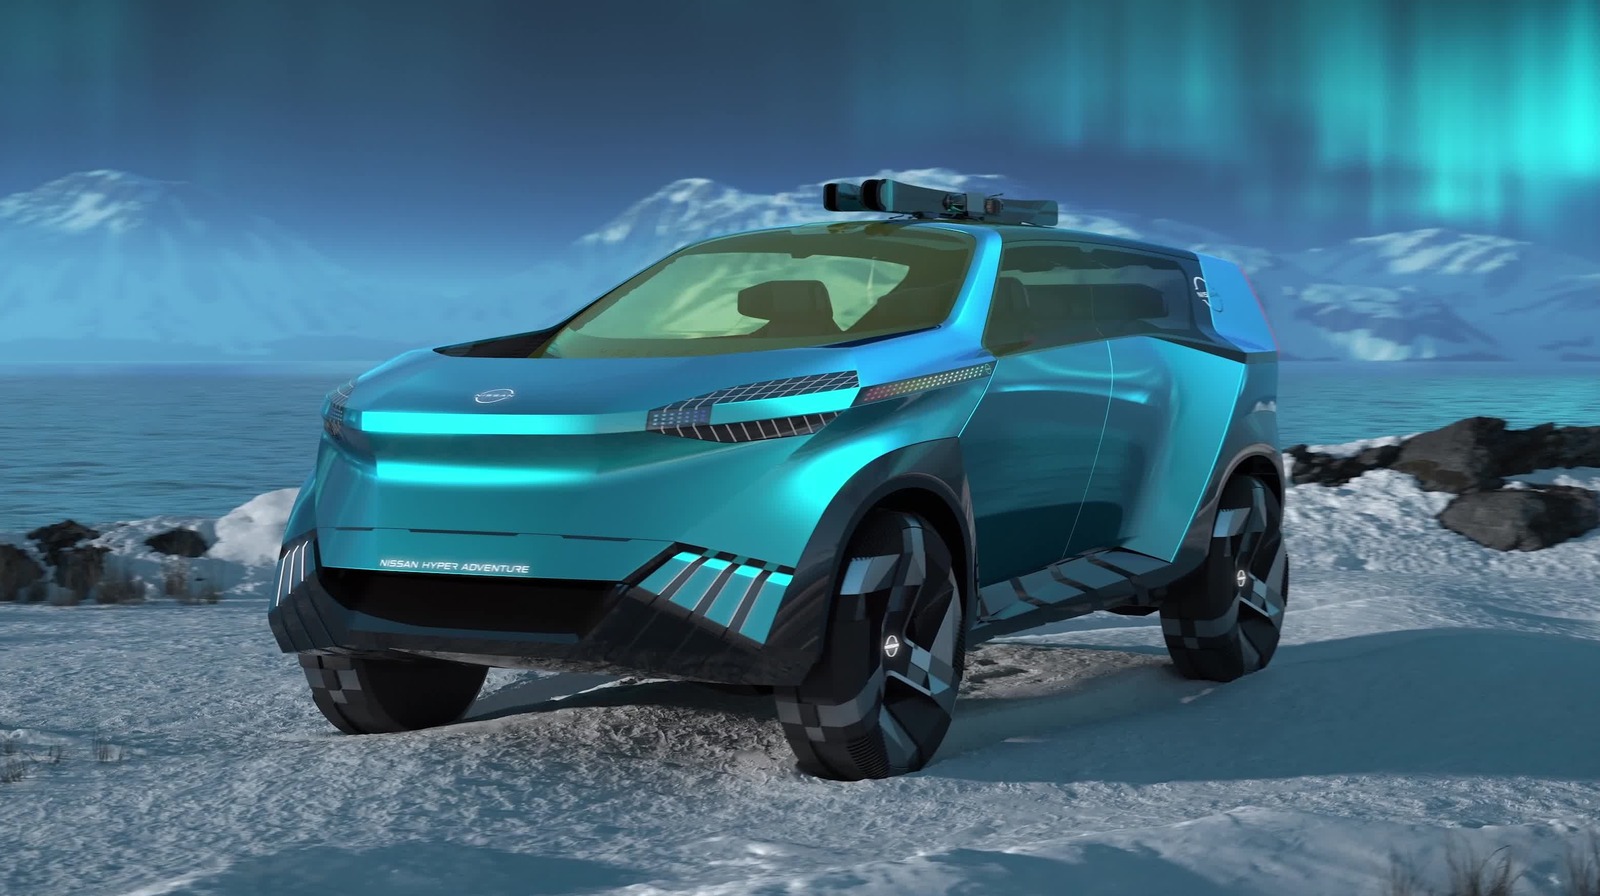 Este concepto Nissan Crossover parece tan futurista como el Cybertruck